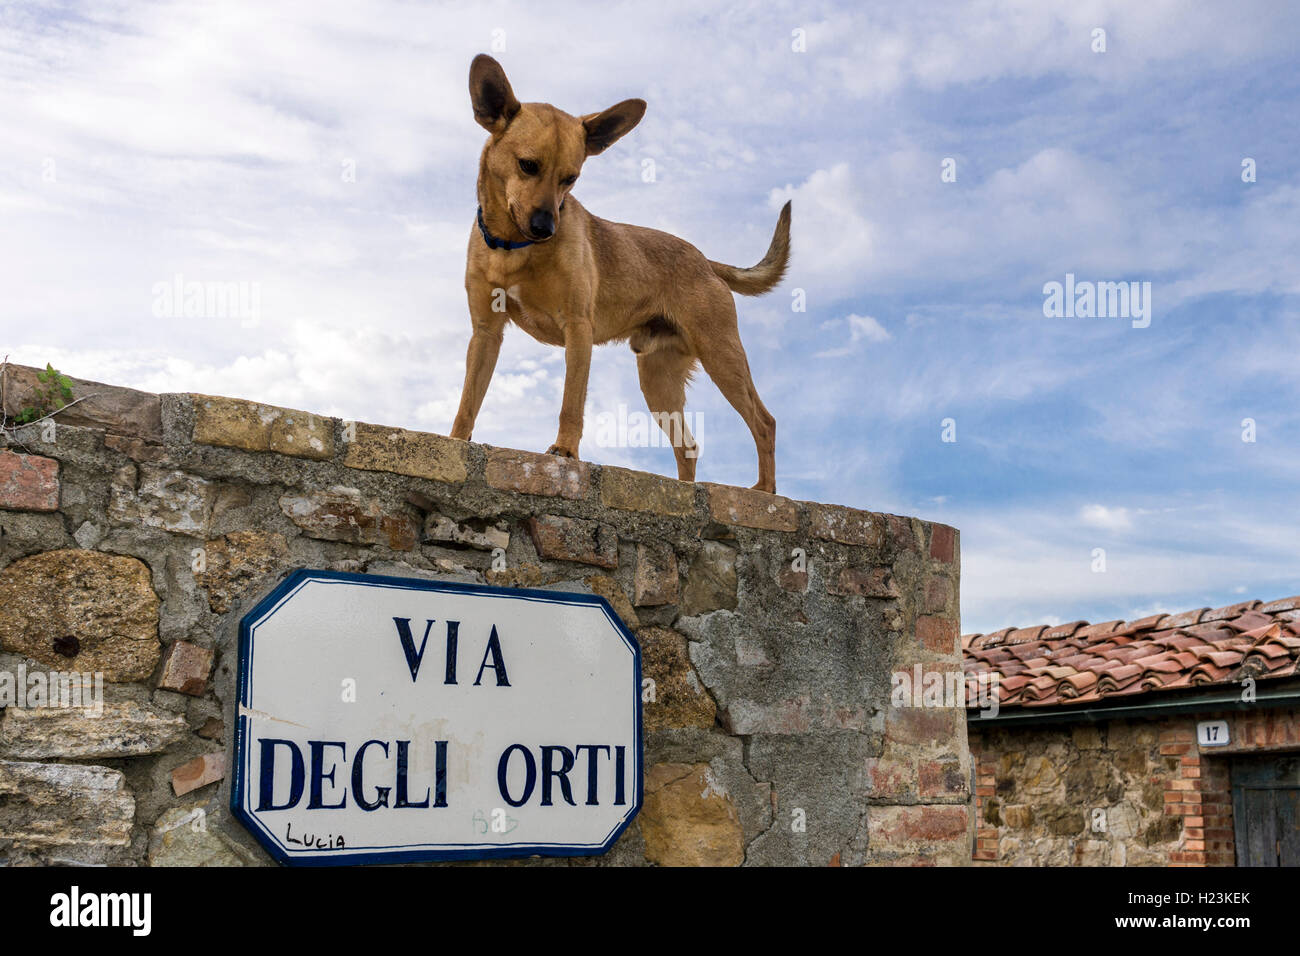 Estrecho callejón, casas de piedra de la ciudad, el perro de pie en pared, San Quirico d'Orcia, Toscana, Italia Foto de stock